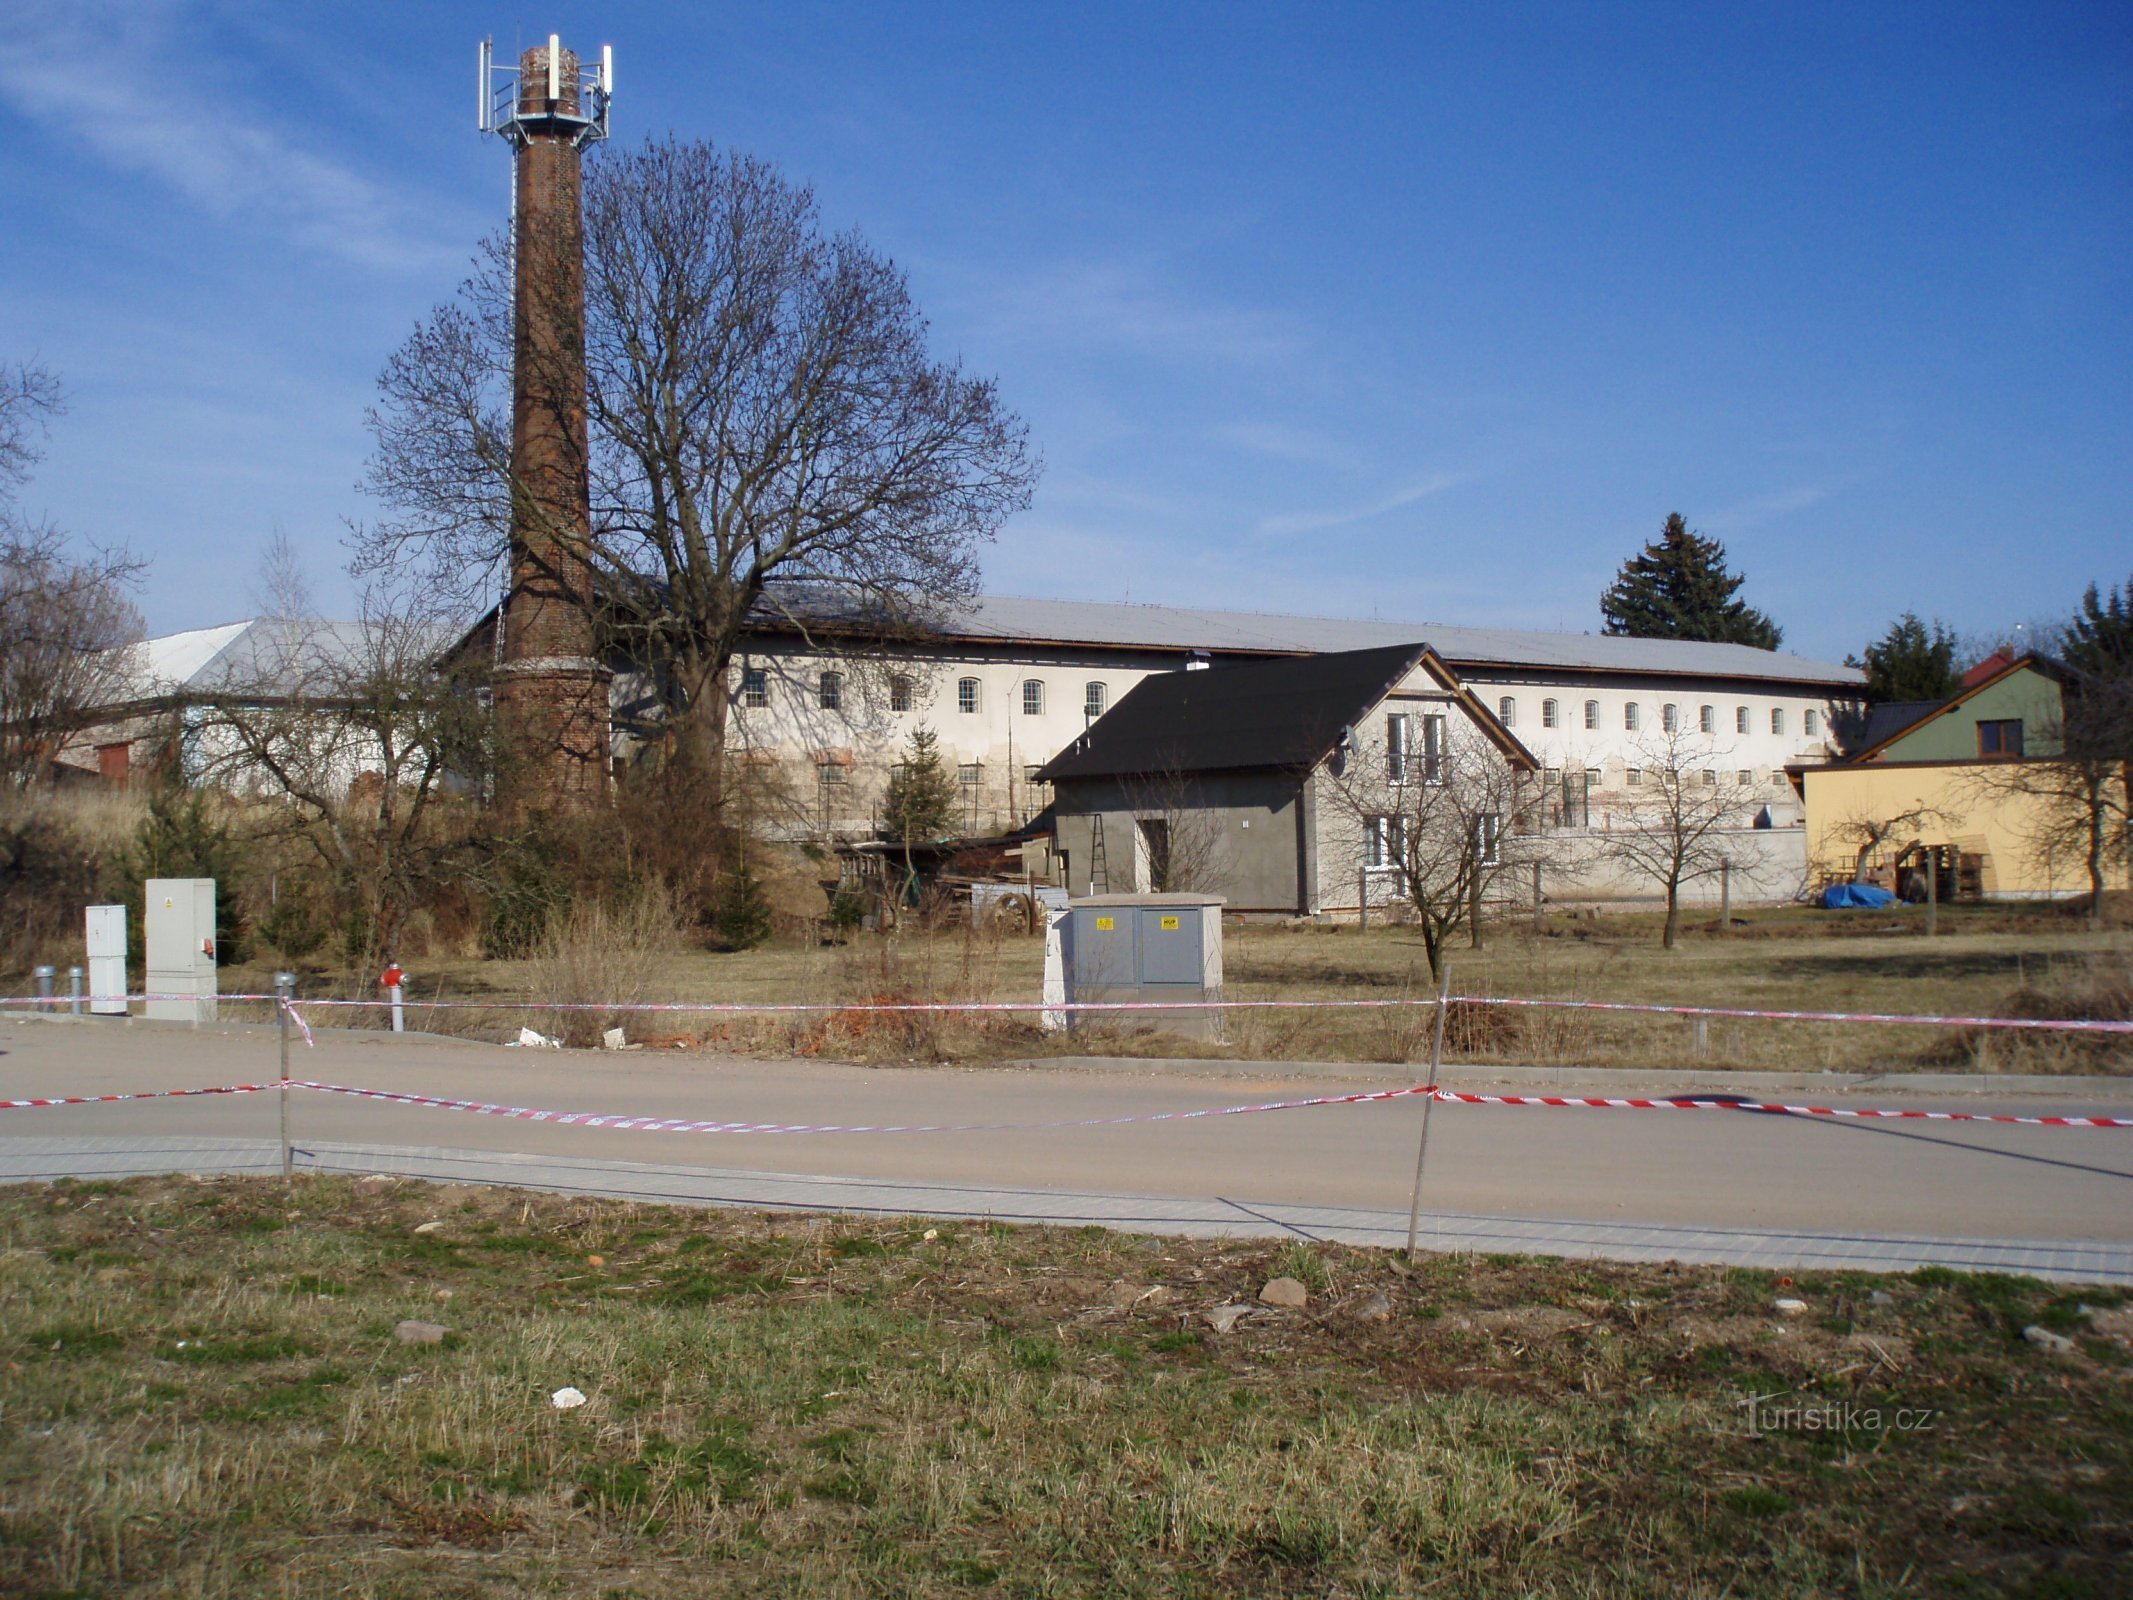 Nhà máy rượu Komárka cũ (Hradec Králové)